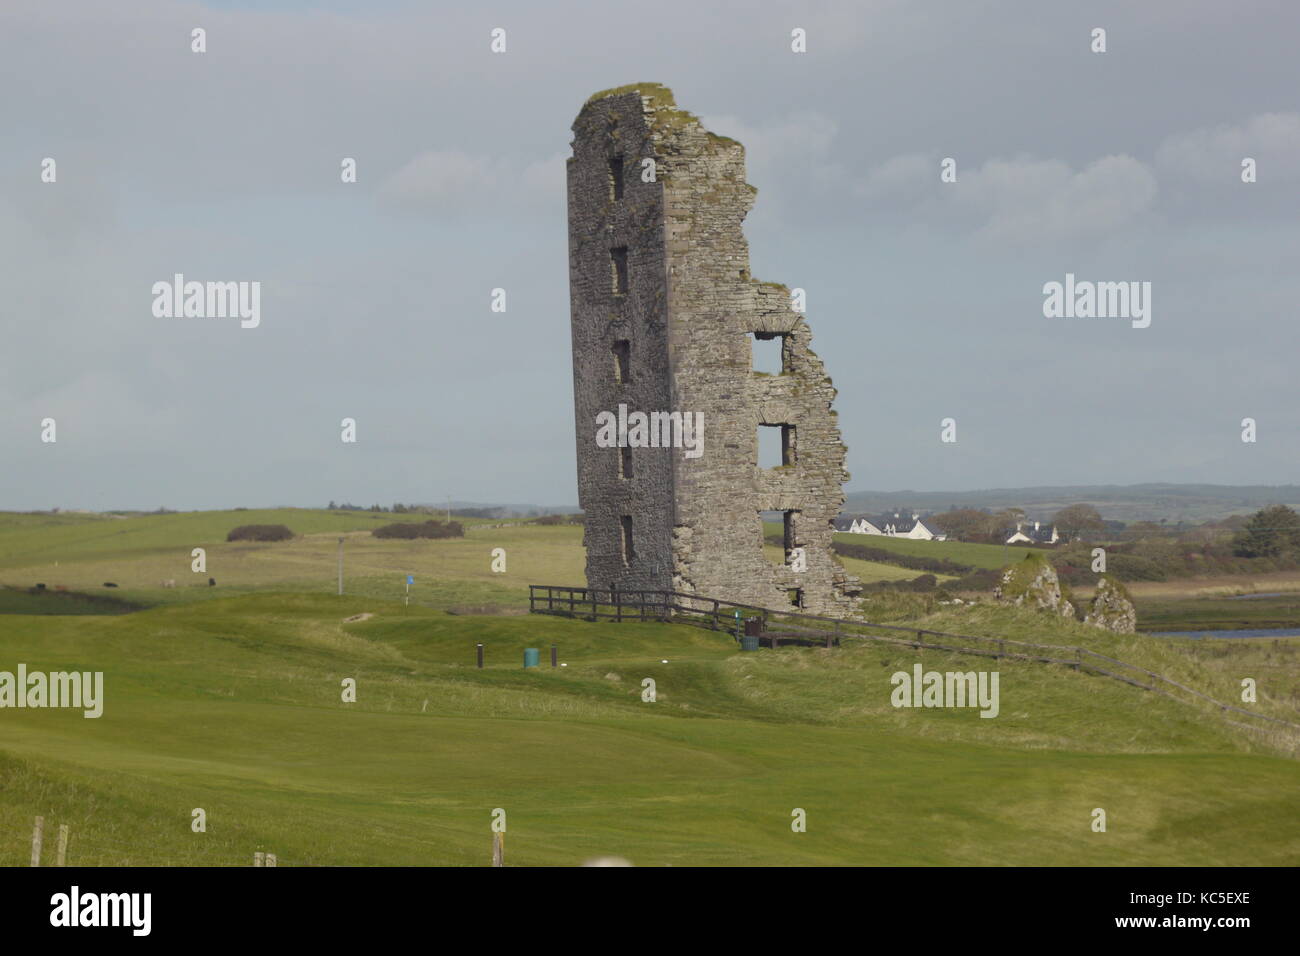 Un abbandonato e castello in rovina nel paesaggio irlandese. Un vecchio rudere di un castello appena circa sorge nella parte ovest dell'Irlanda. Foto Stock